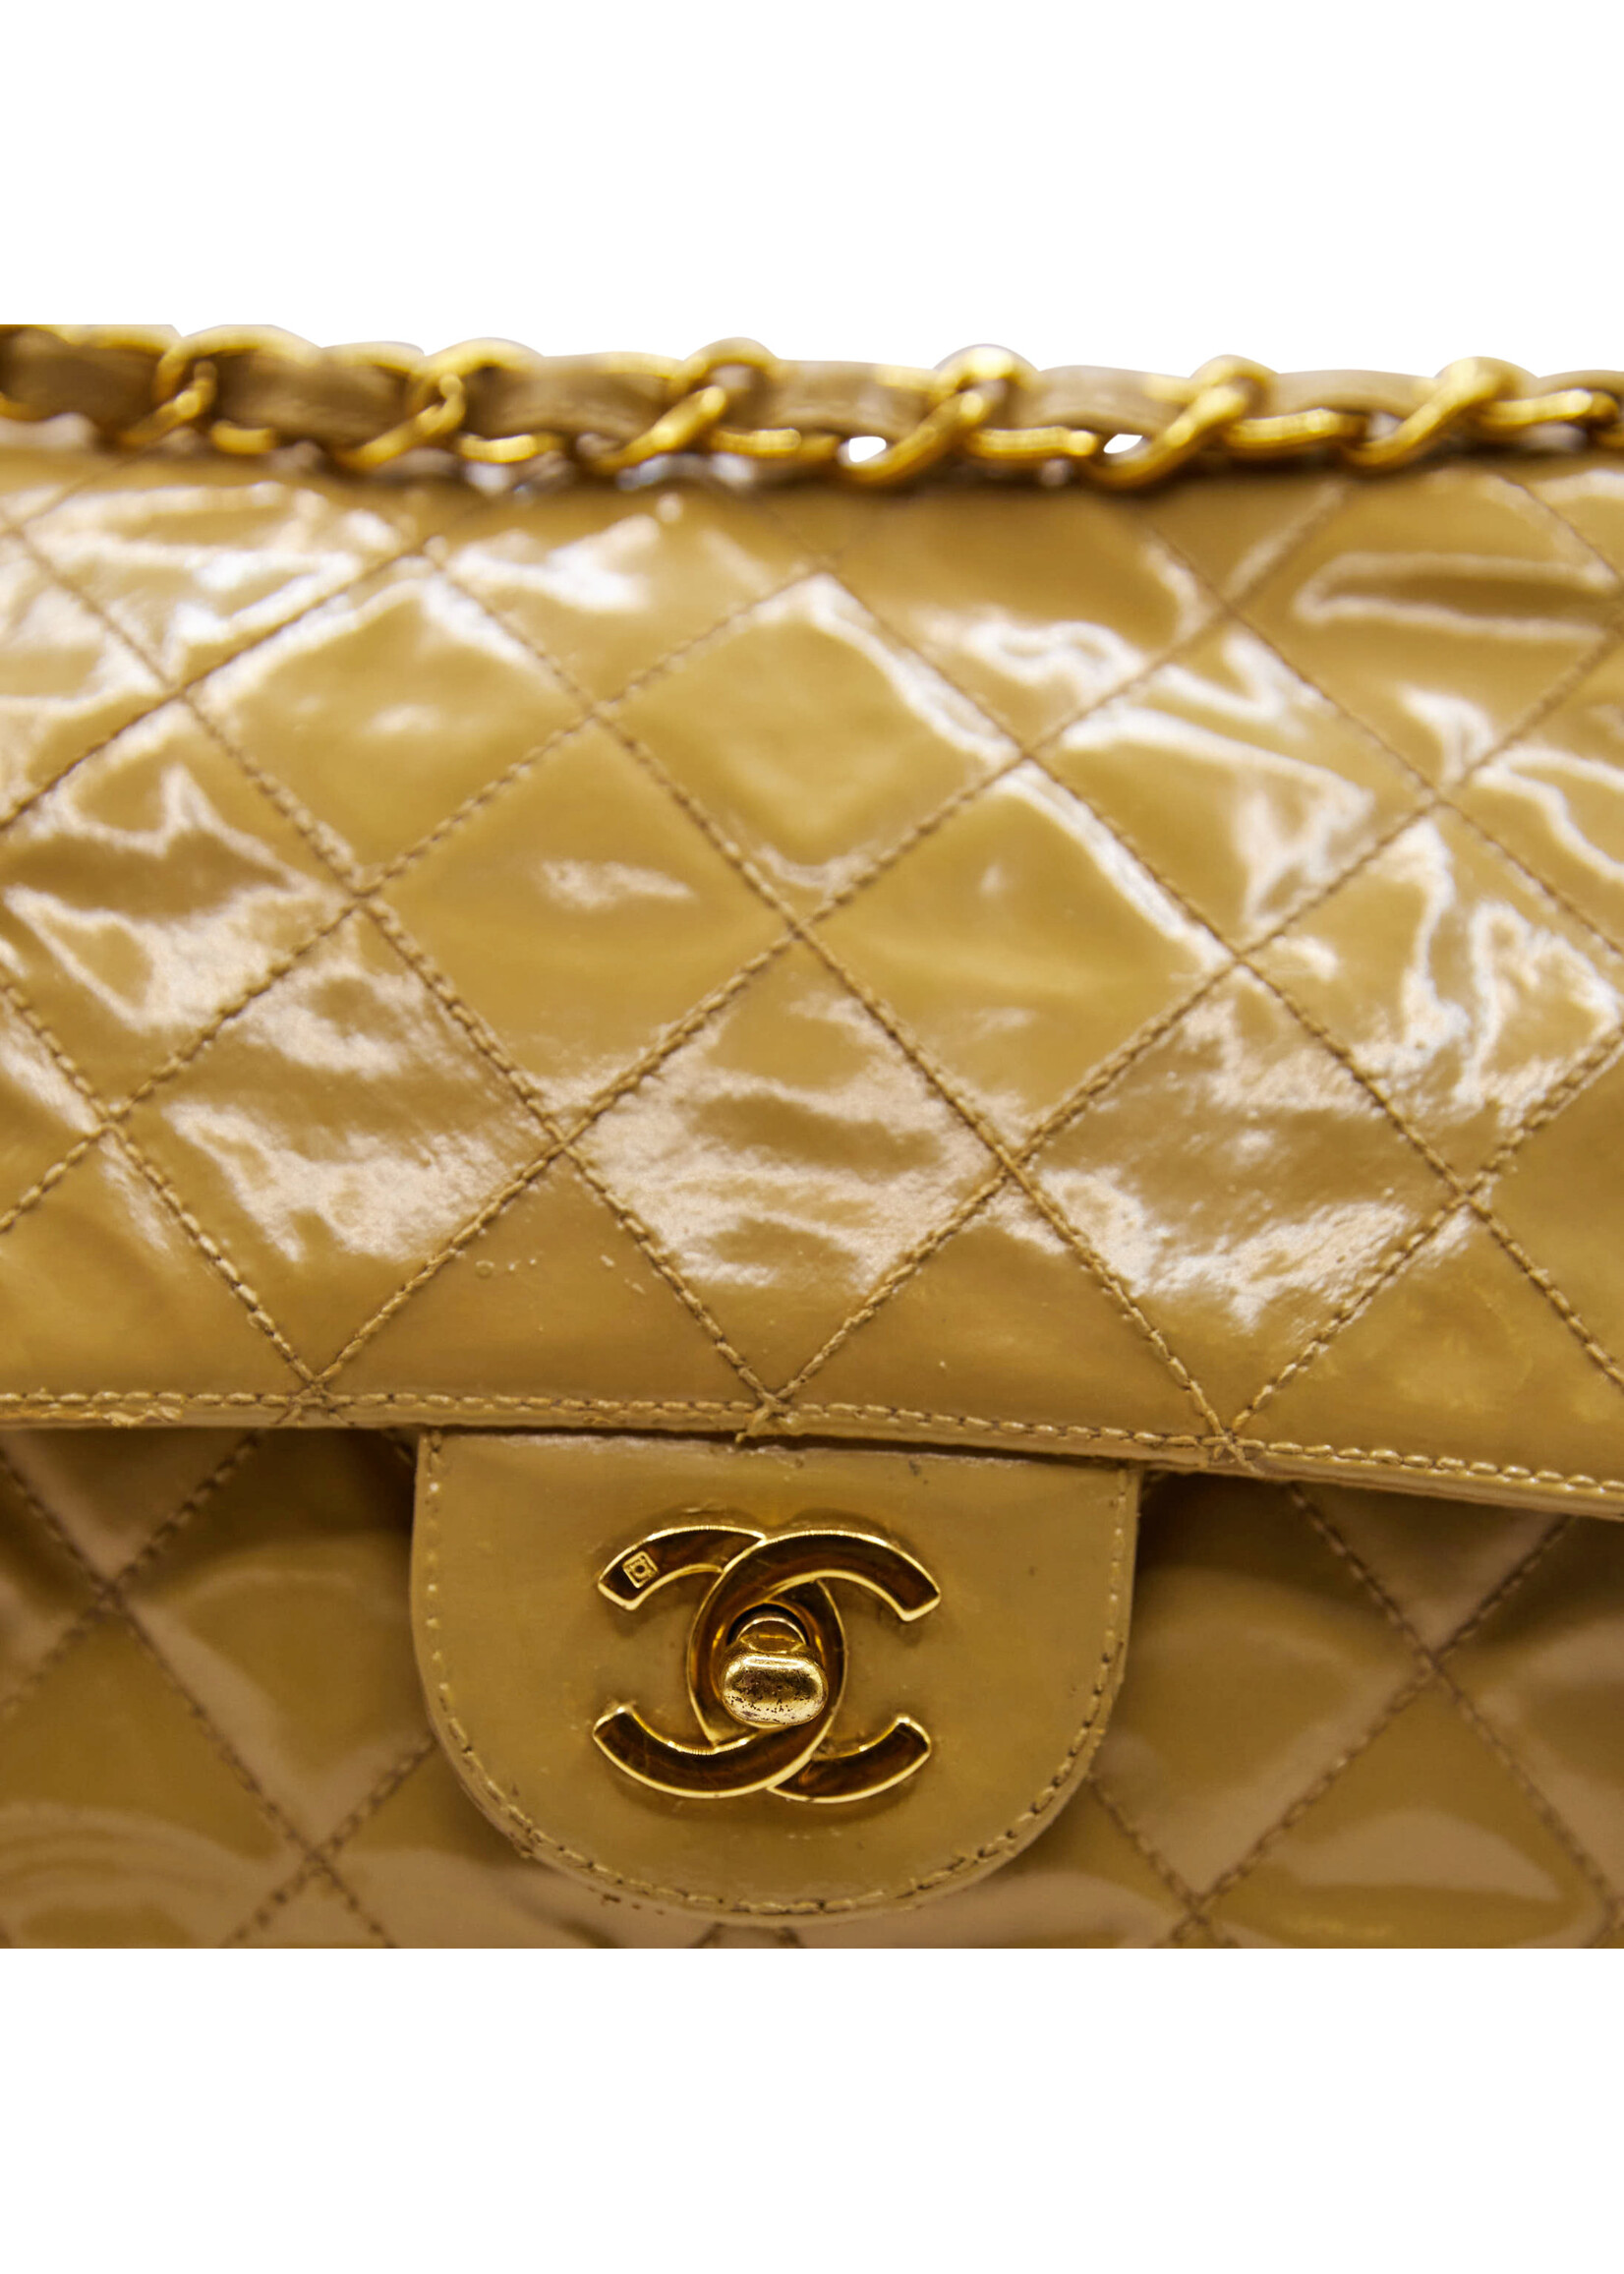 Vintage Chanel gold leather shoulder bag